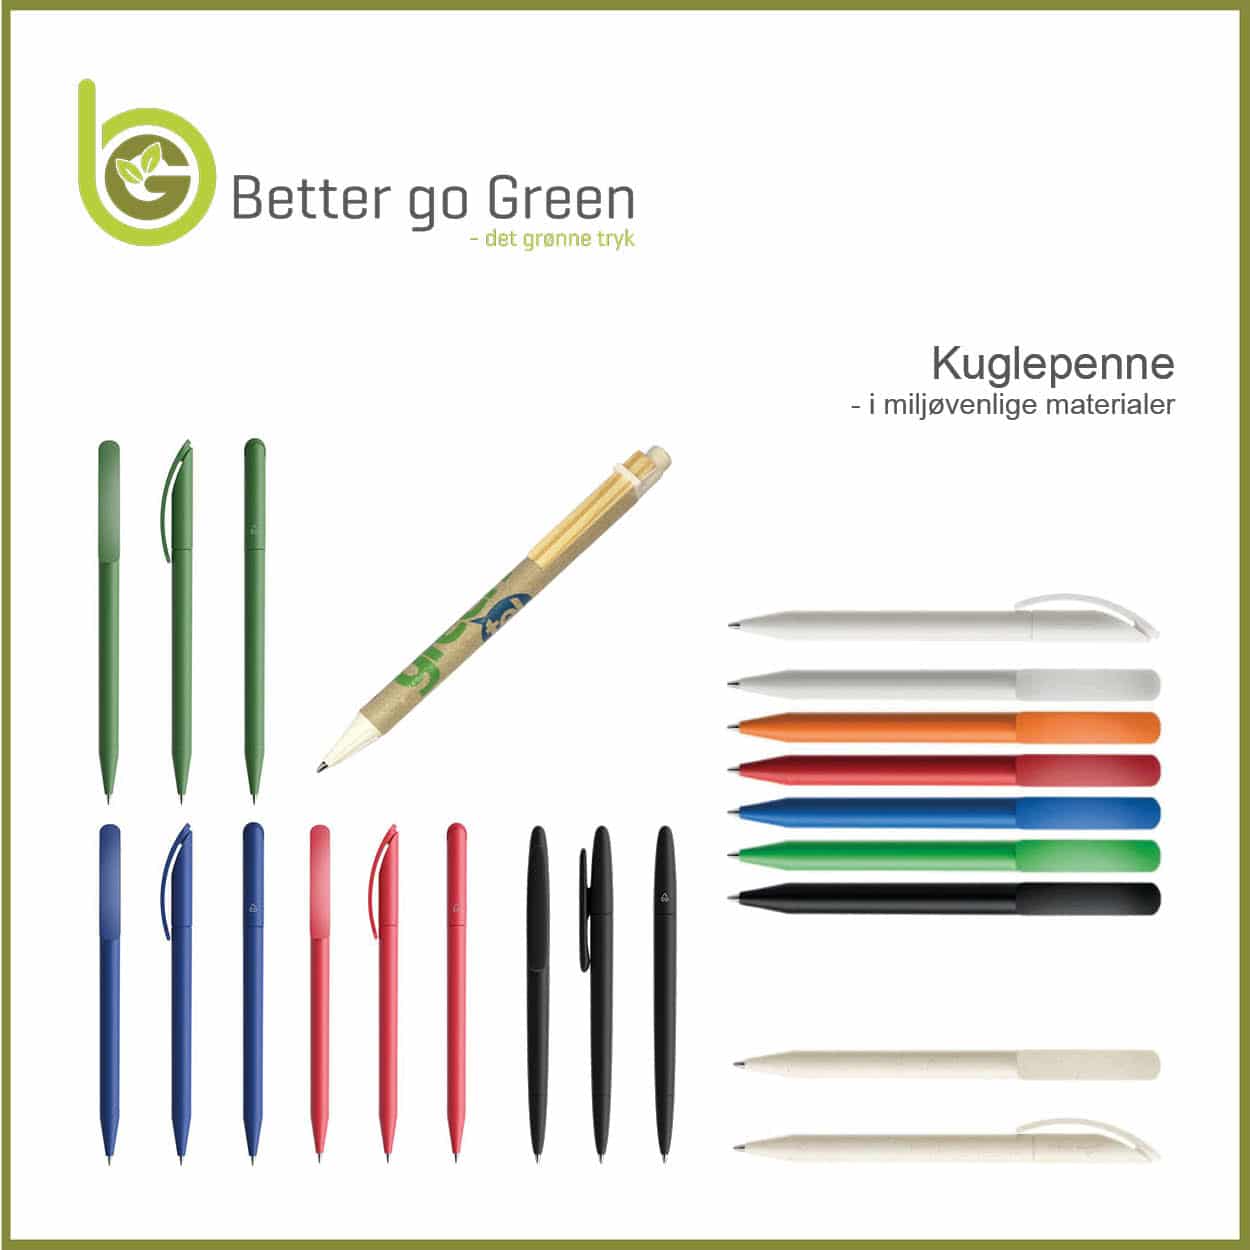 Kuglepenne i miljøvenlige materialer. BetterGoGreen.dk